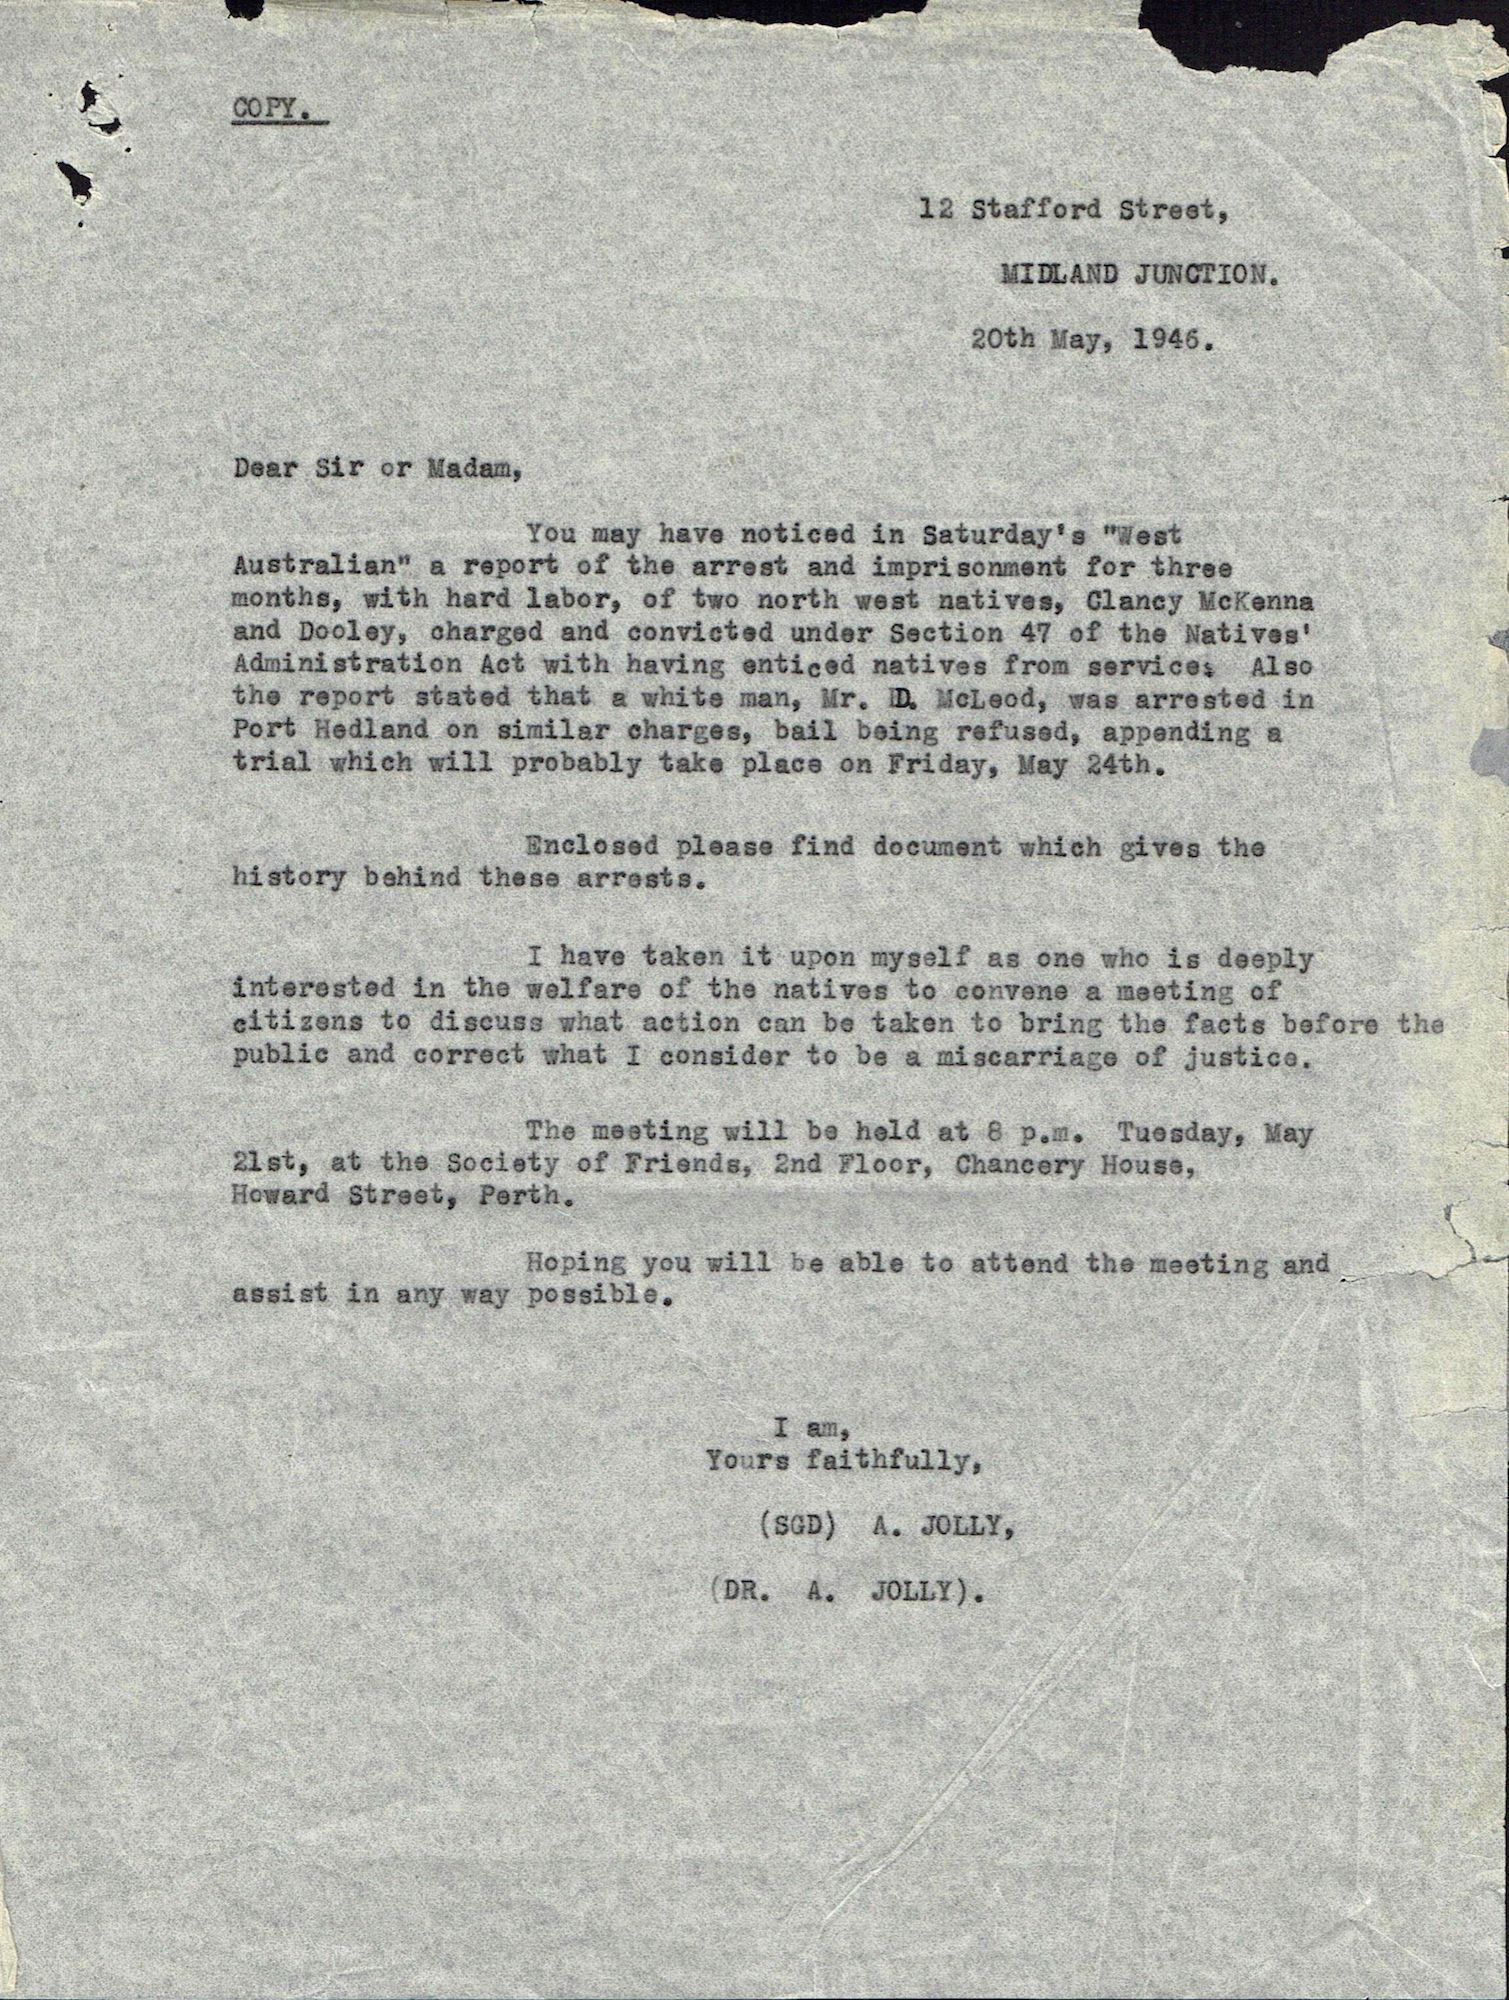 Alec Jolly, circular letter, 20 May 1946